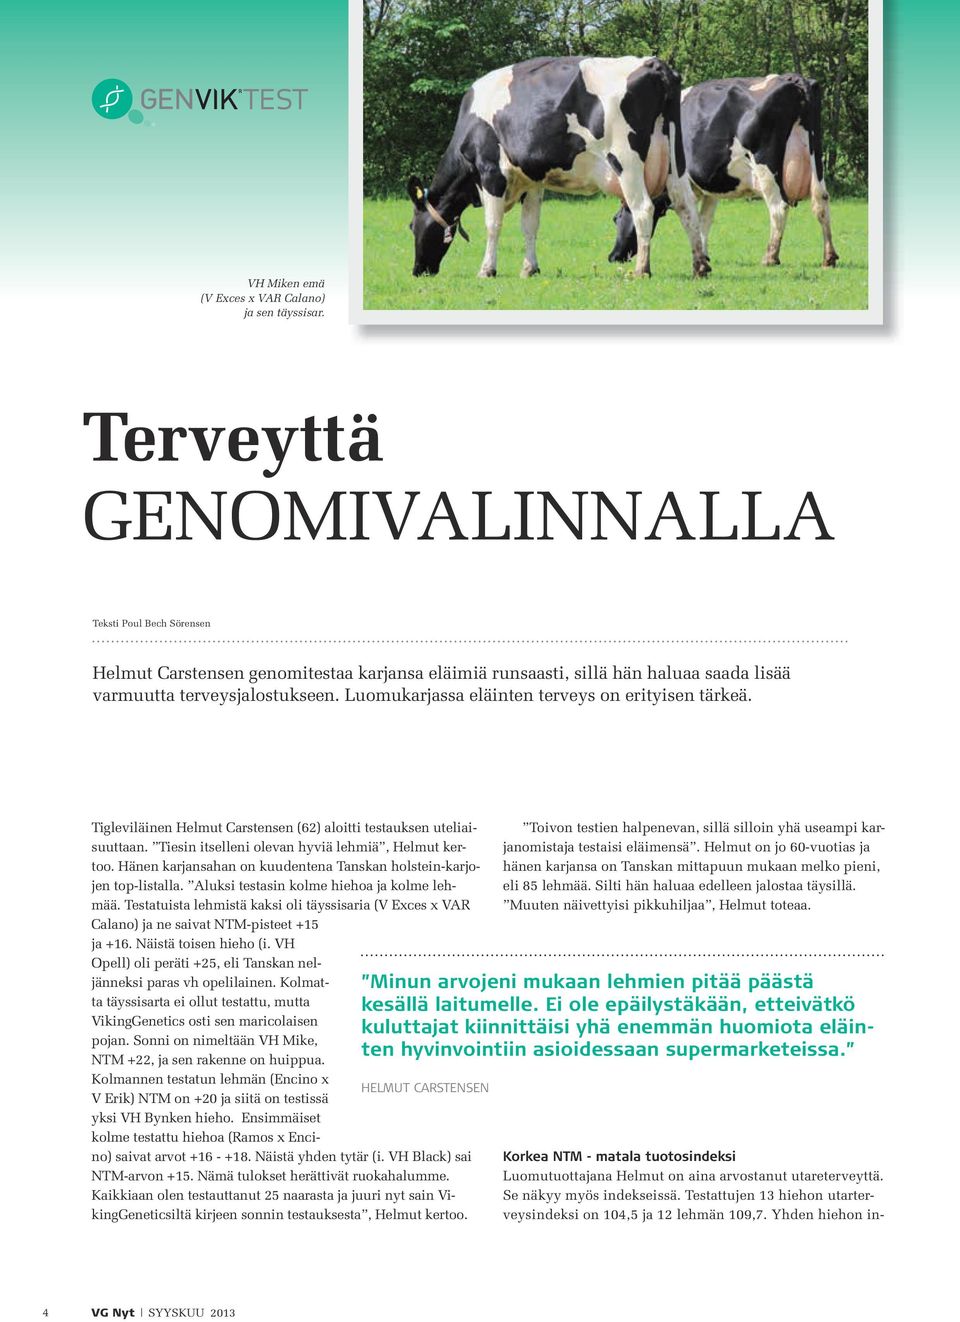 Luomukarjassa eläinten terveys on erityisen tärkeä. Tigleviläinen Helmut Carstensen (62) aloitti testauksen uteliaisuuttaan. Tiesin itselleni olevan hyviä lehmiä, Helmut kertoo.